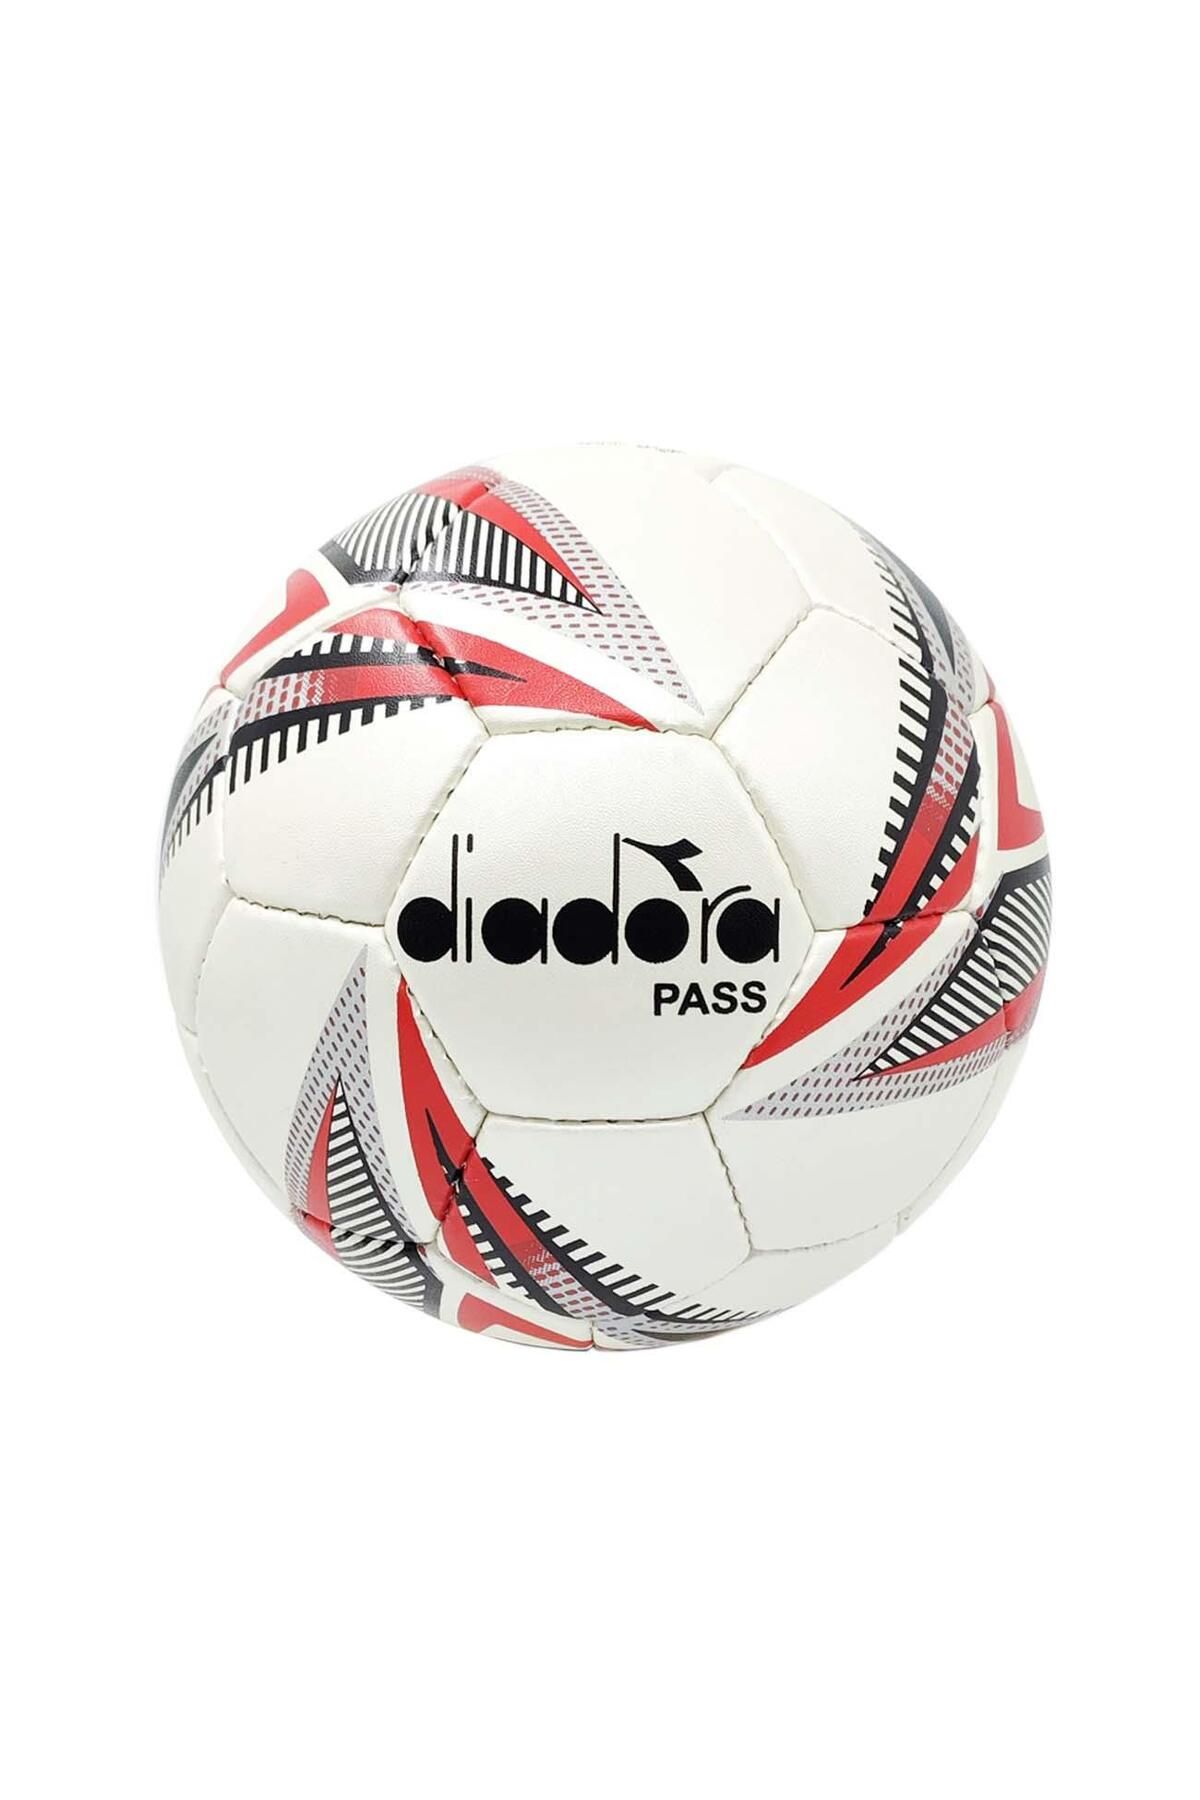 Diadora 4060241 Pass Futbol Topu Kırmızı-beyaz